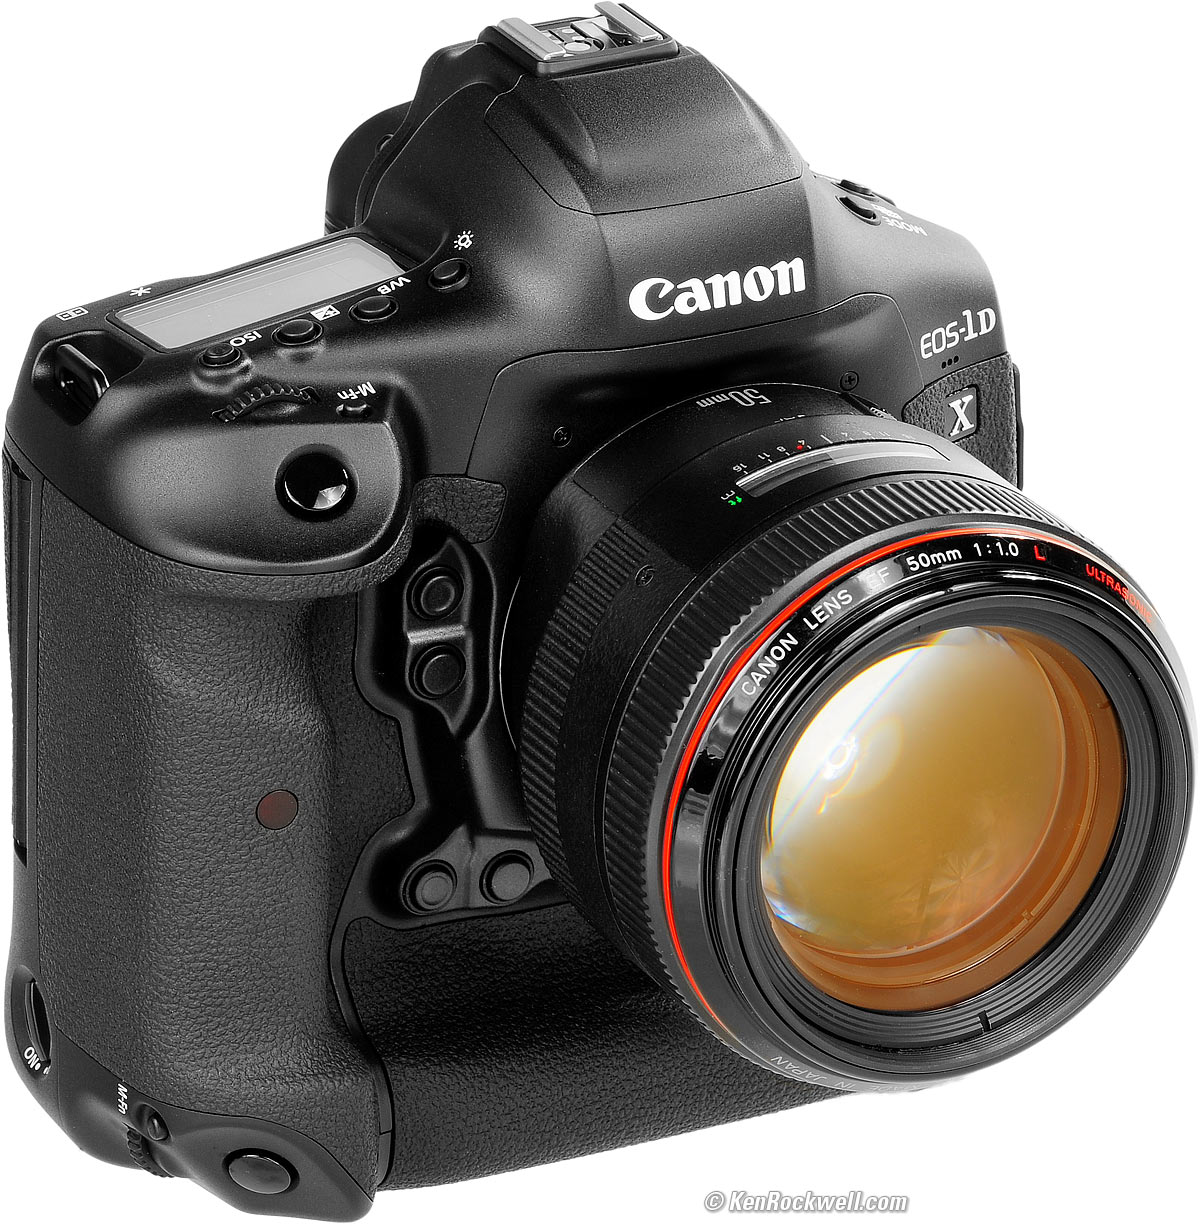 Evalueerbaar pijn Ijveraar Canon 1DX Mark III Review